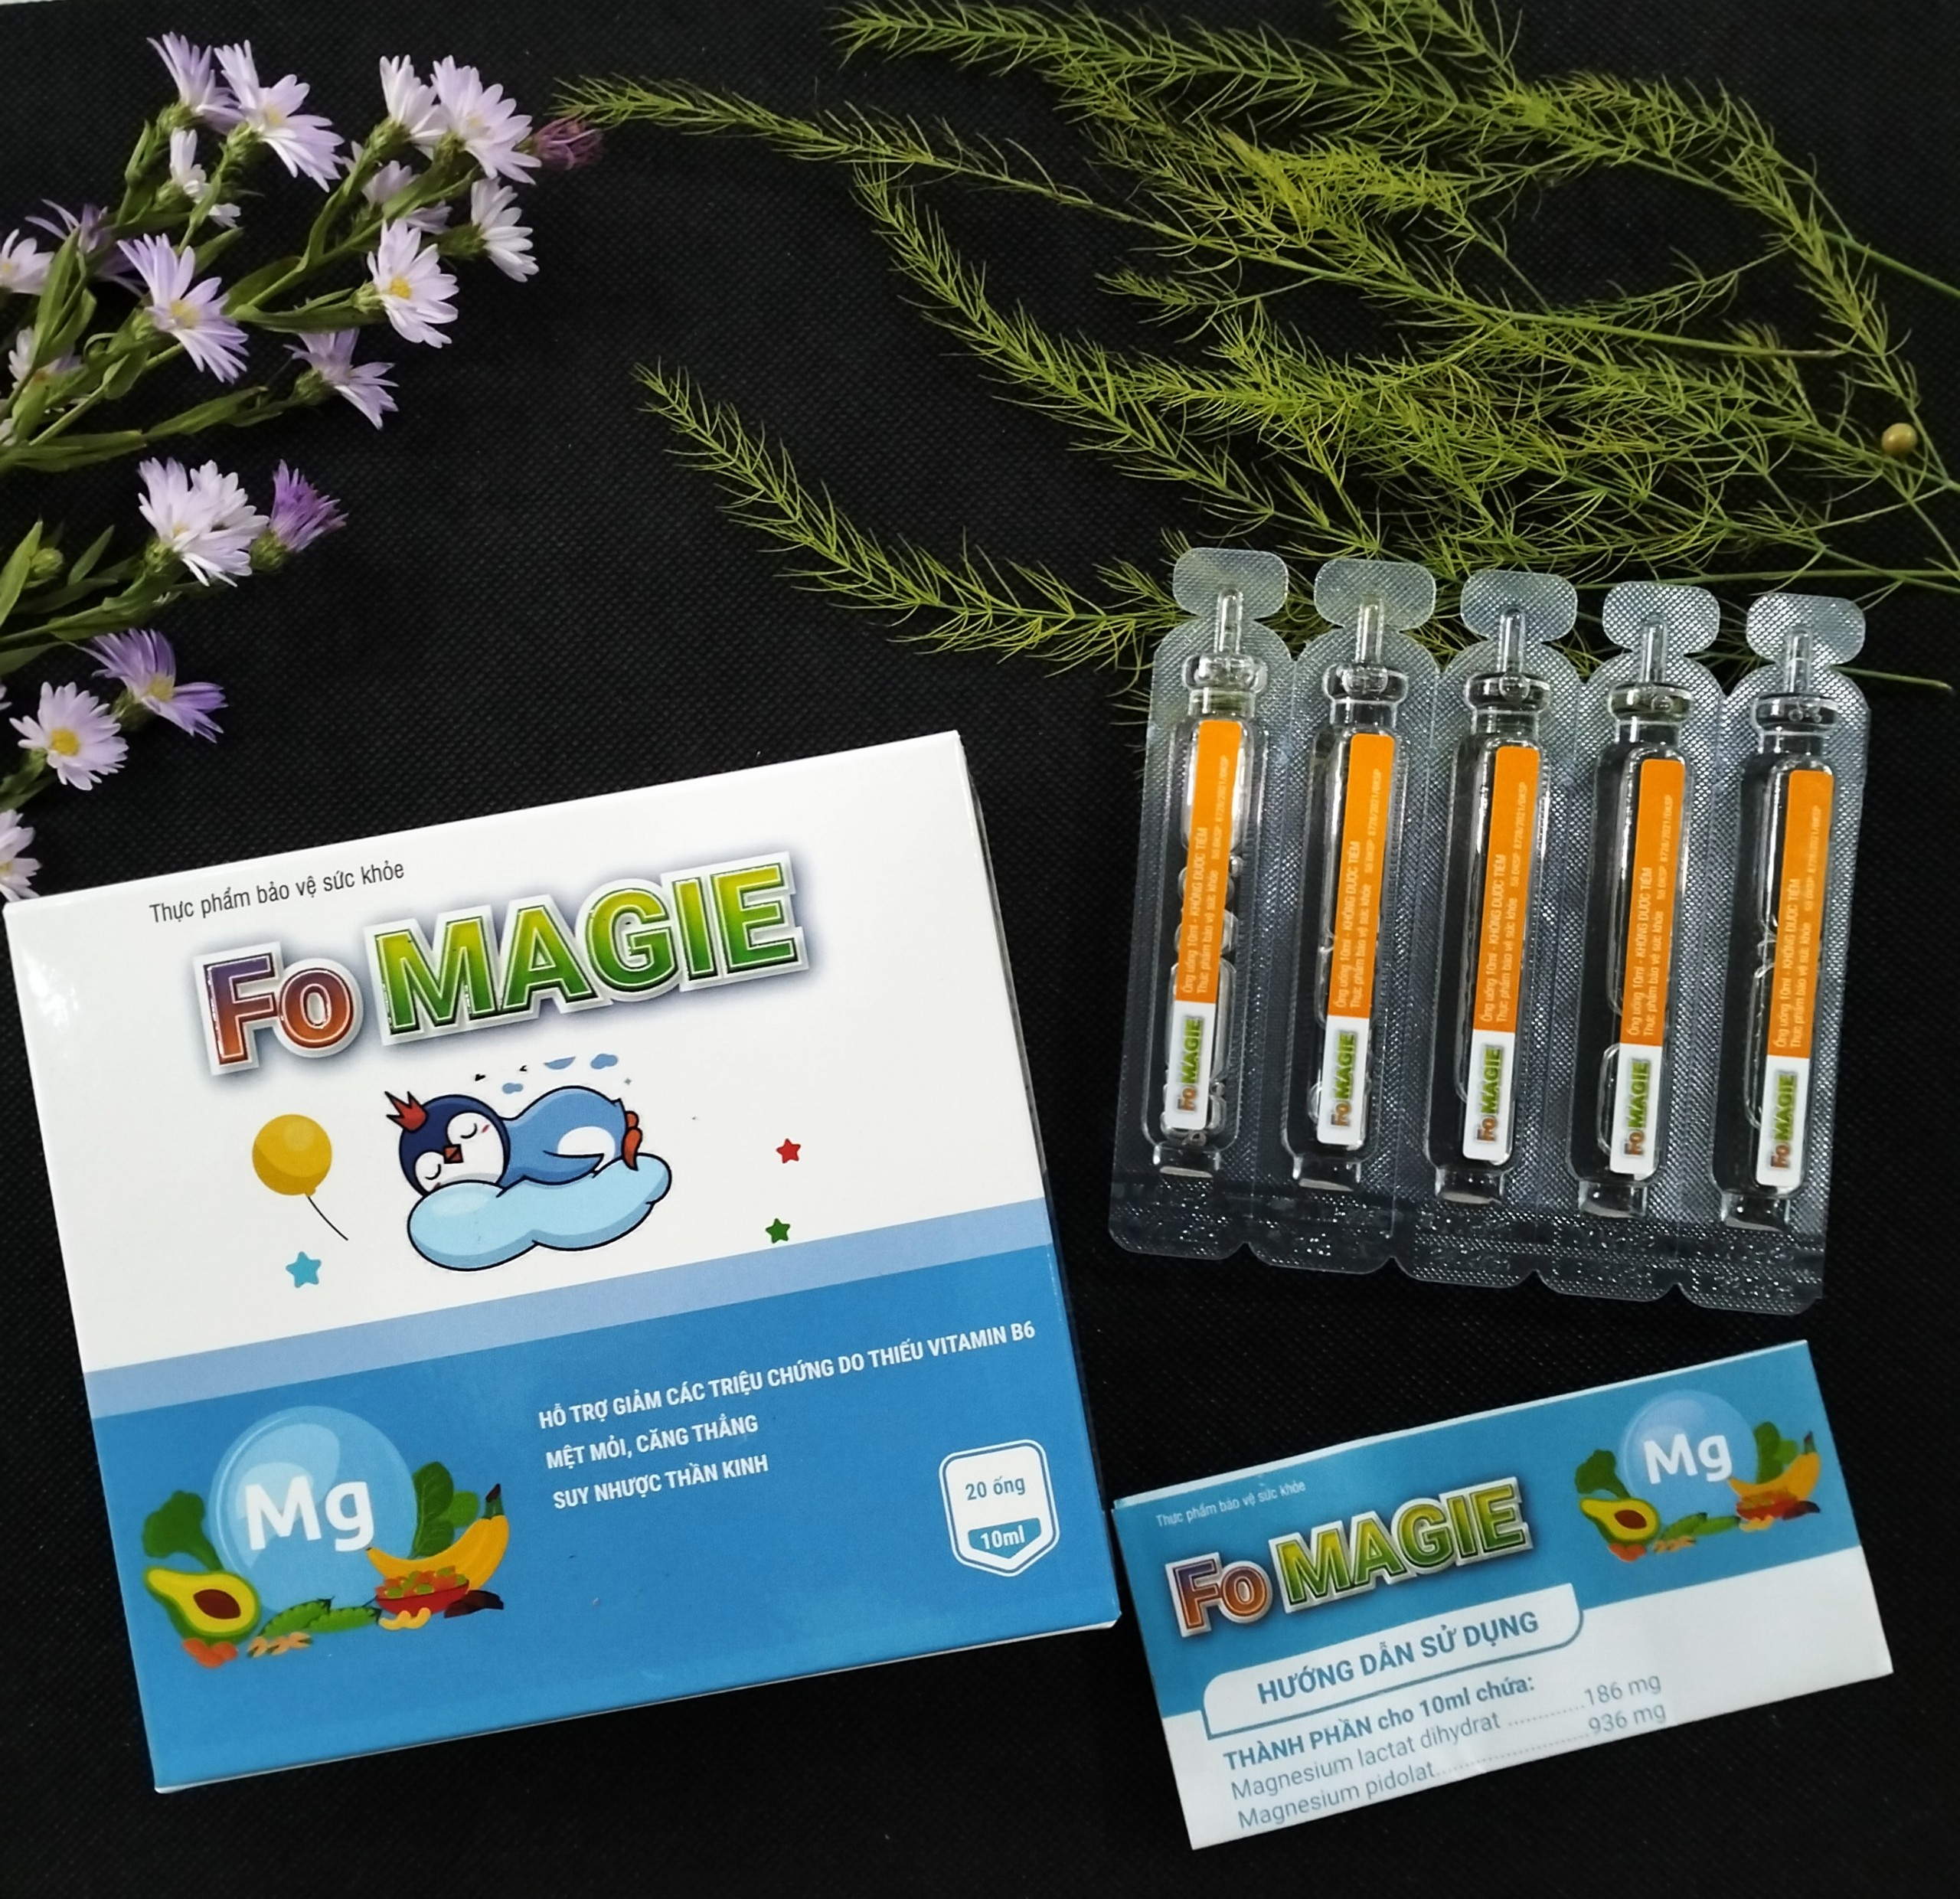 Fo Magie Fobelife - Hỗ trợ giảm các triệu chứng do thiếu Vitamin B6 - Giảm căng thẳng, mệt mỏi - Hộp 20 ống